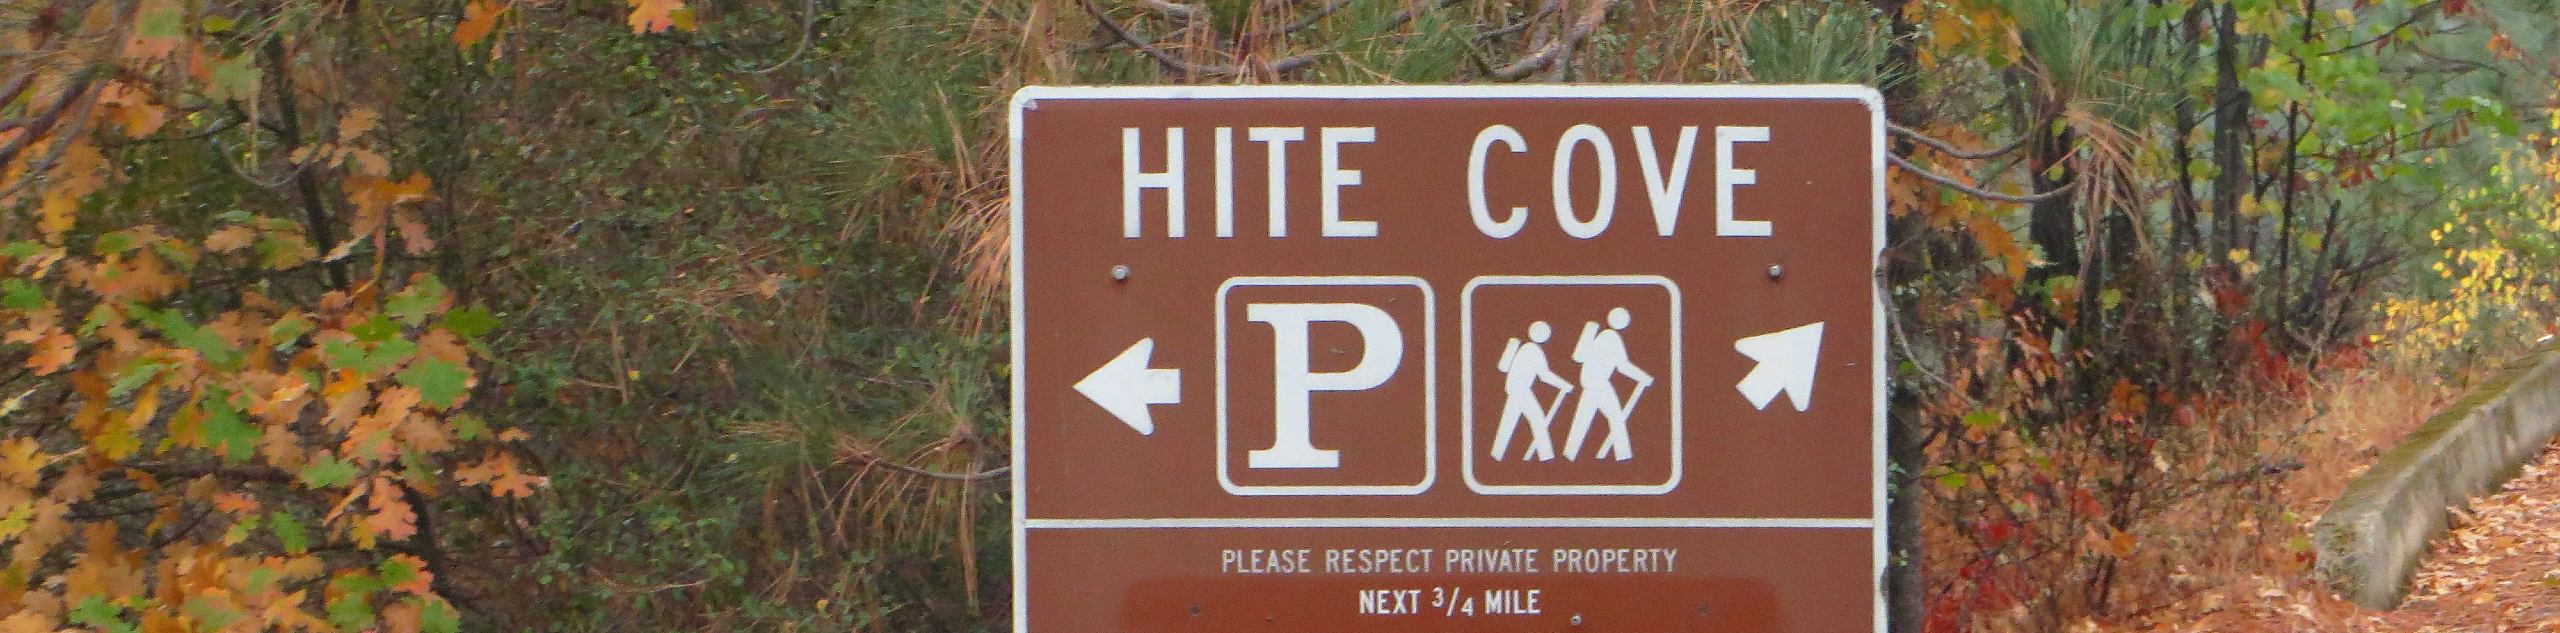 Hite Cove Road Hike